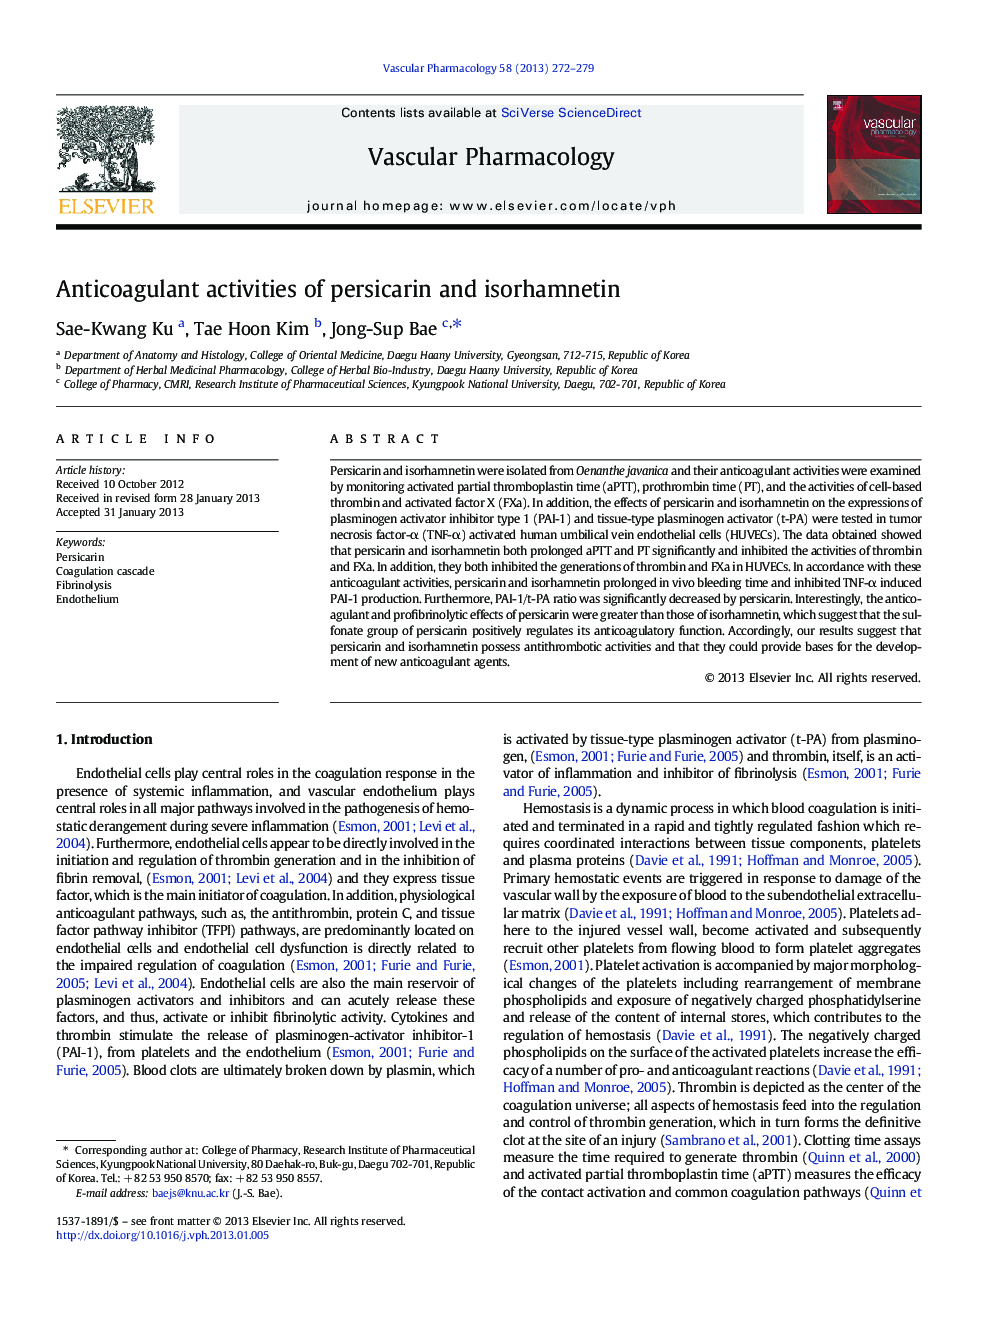 Anticoagulant activities of persicarin and isorhamnetin